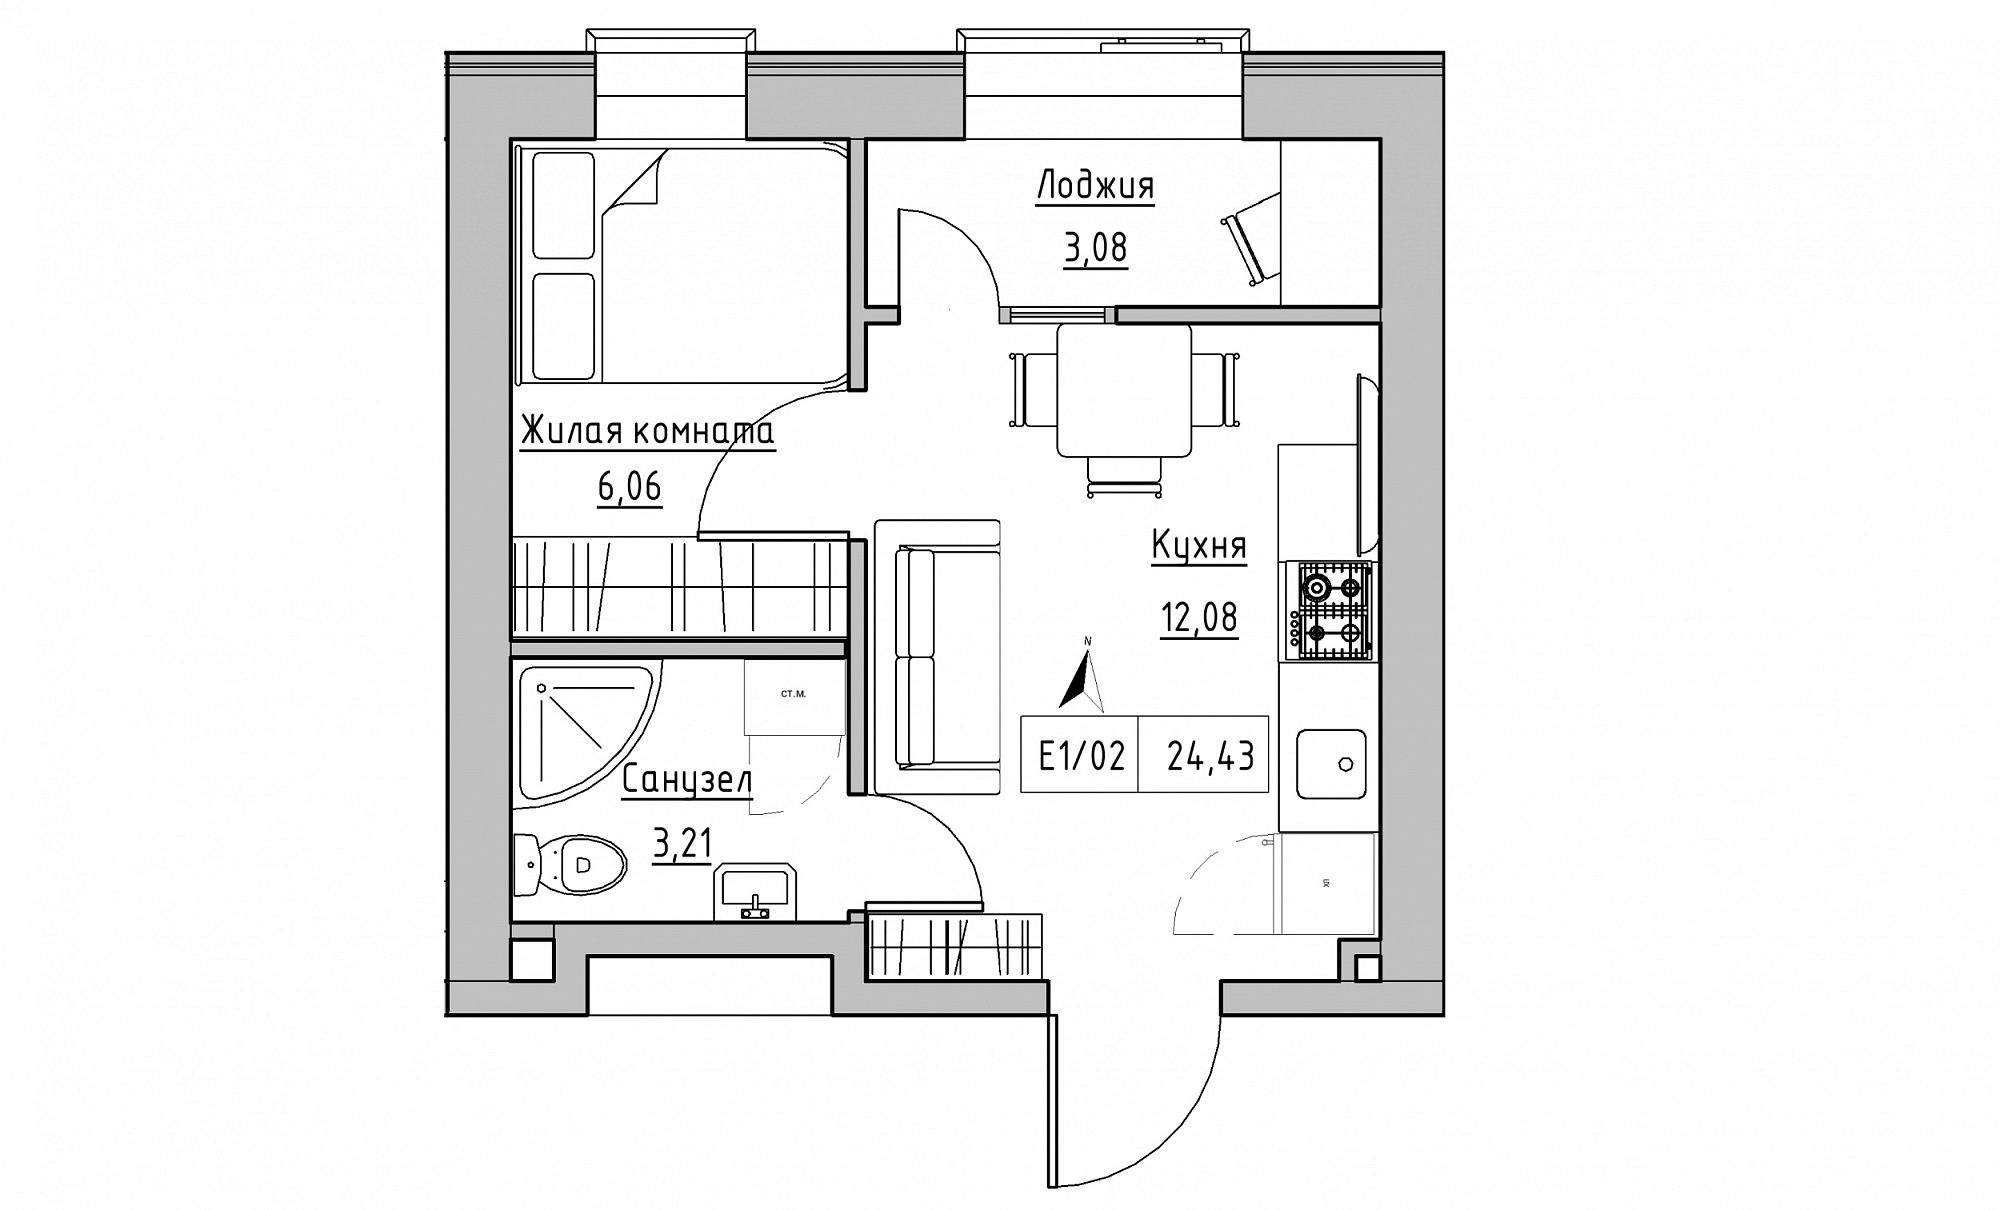 Планировка 1-к квартира площей 24.43м2, KS-015-03/0014.